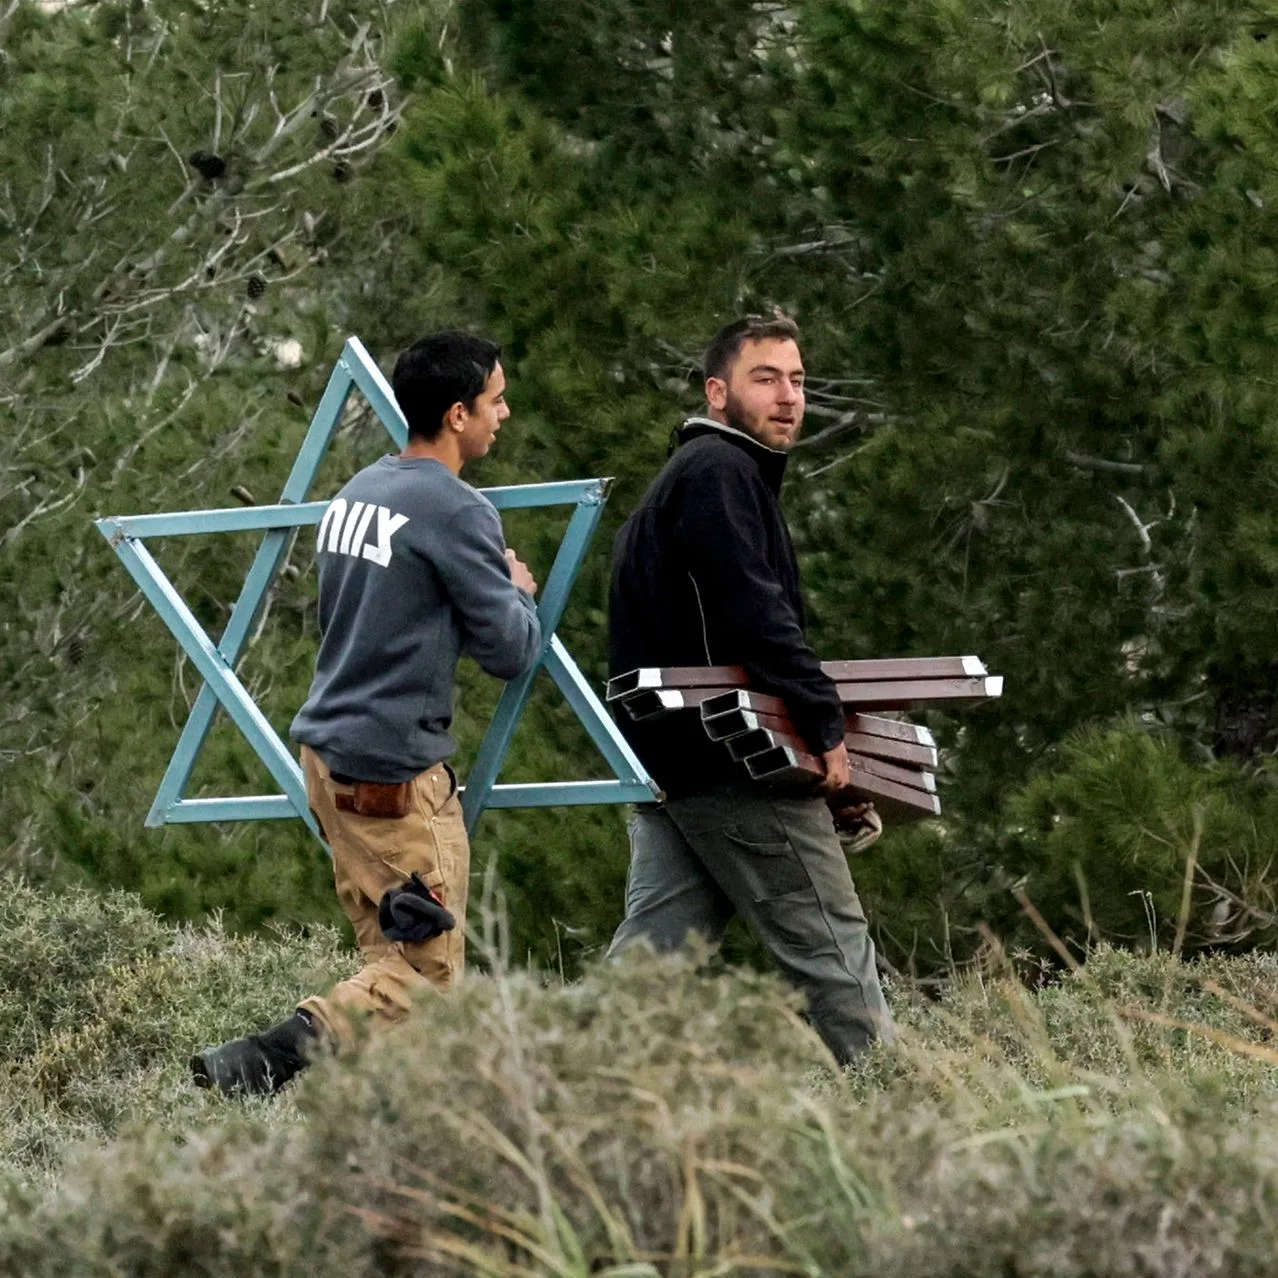 مستوطنون إسرائيليون يحملون نجمة داوود معدنية نحو بؤرة استيطانية جديدة قرب قرية في الضفة الغربية